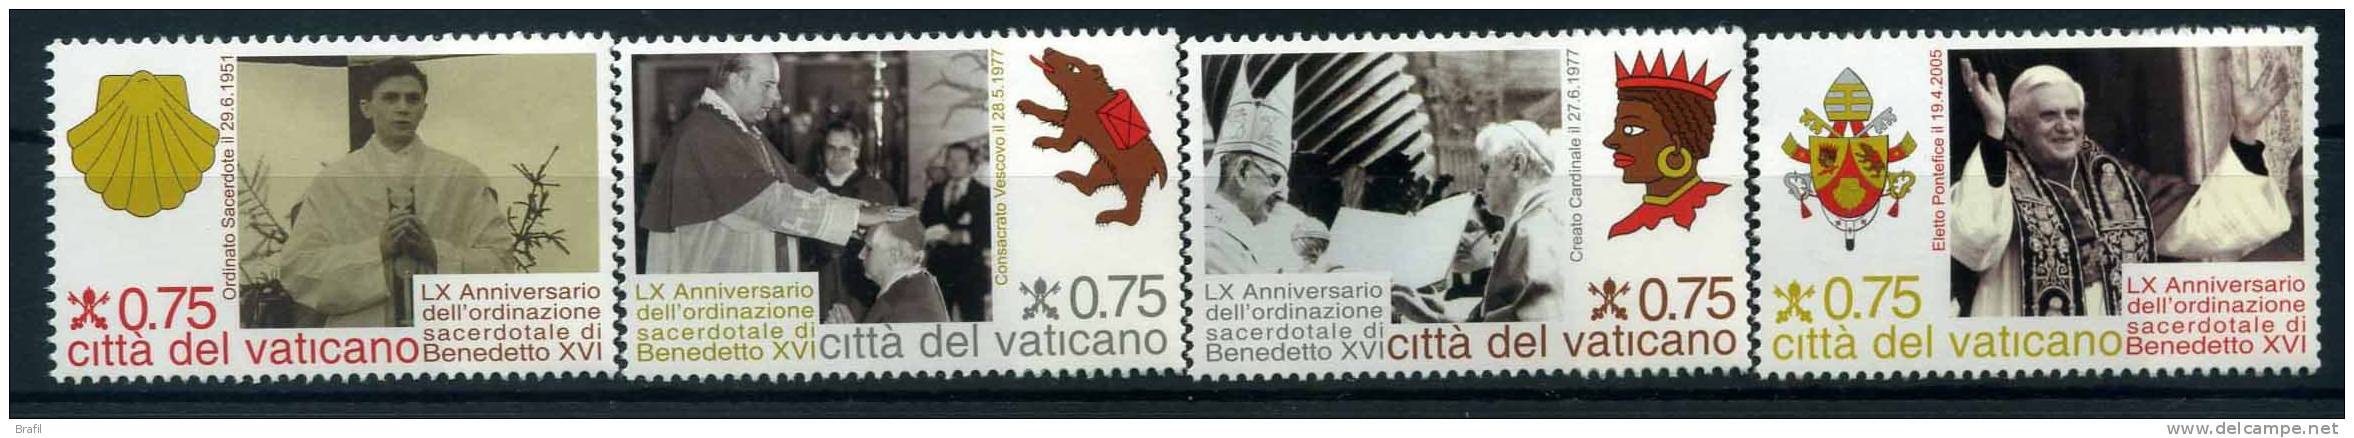 2011 Vaticano, LX Ann. Ordinazione Sacerdotale Benedetto XVI , Serie Completa Nuova (**) - Unused Stamps